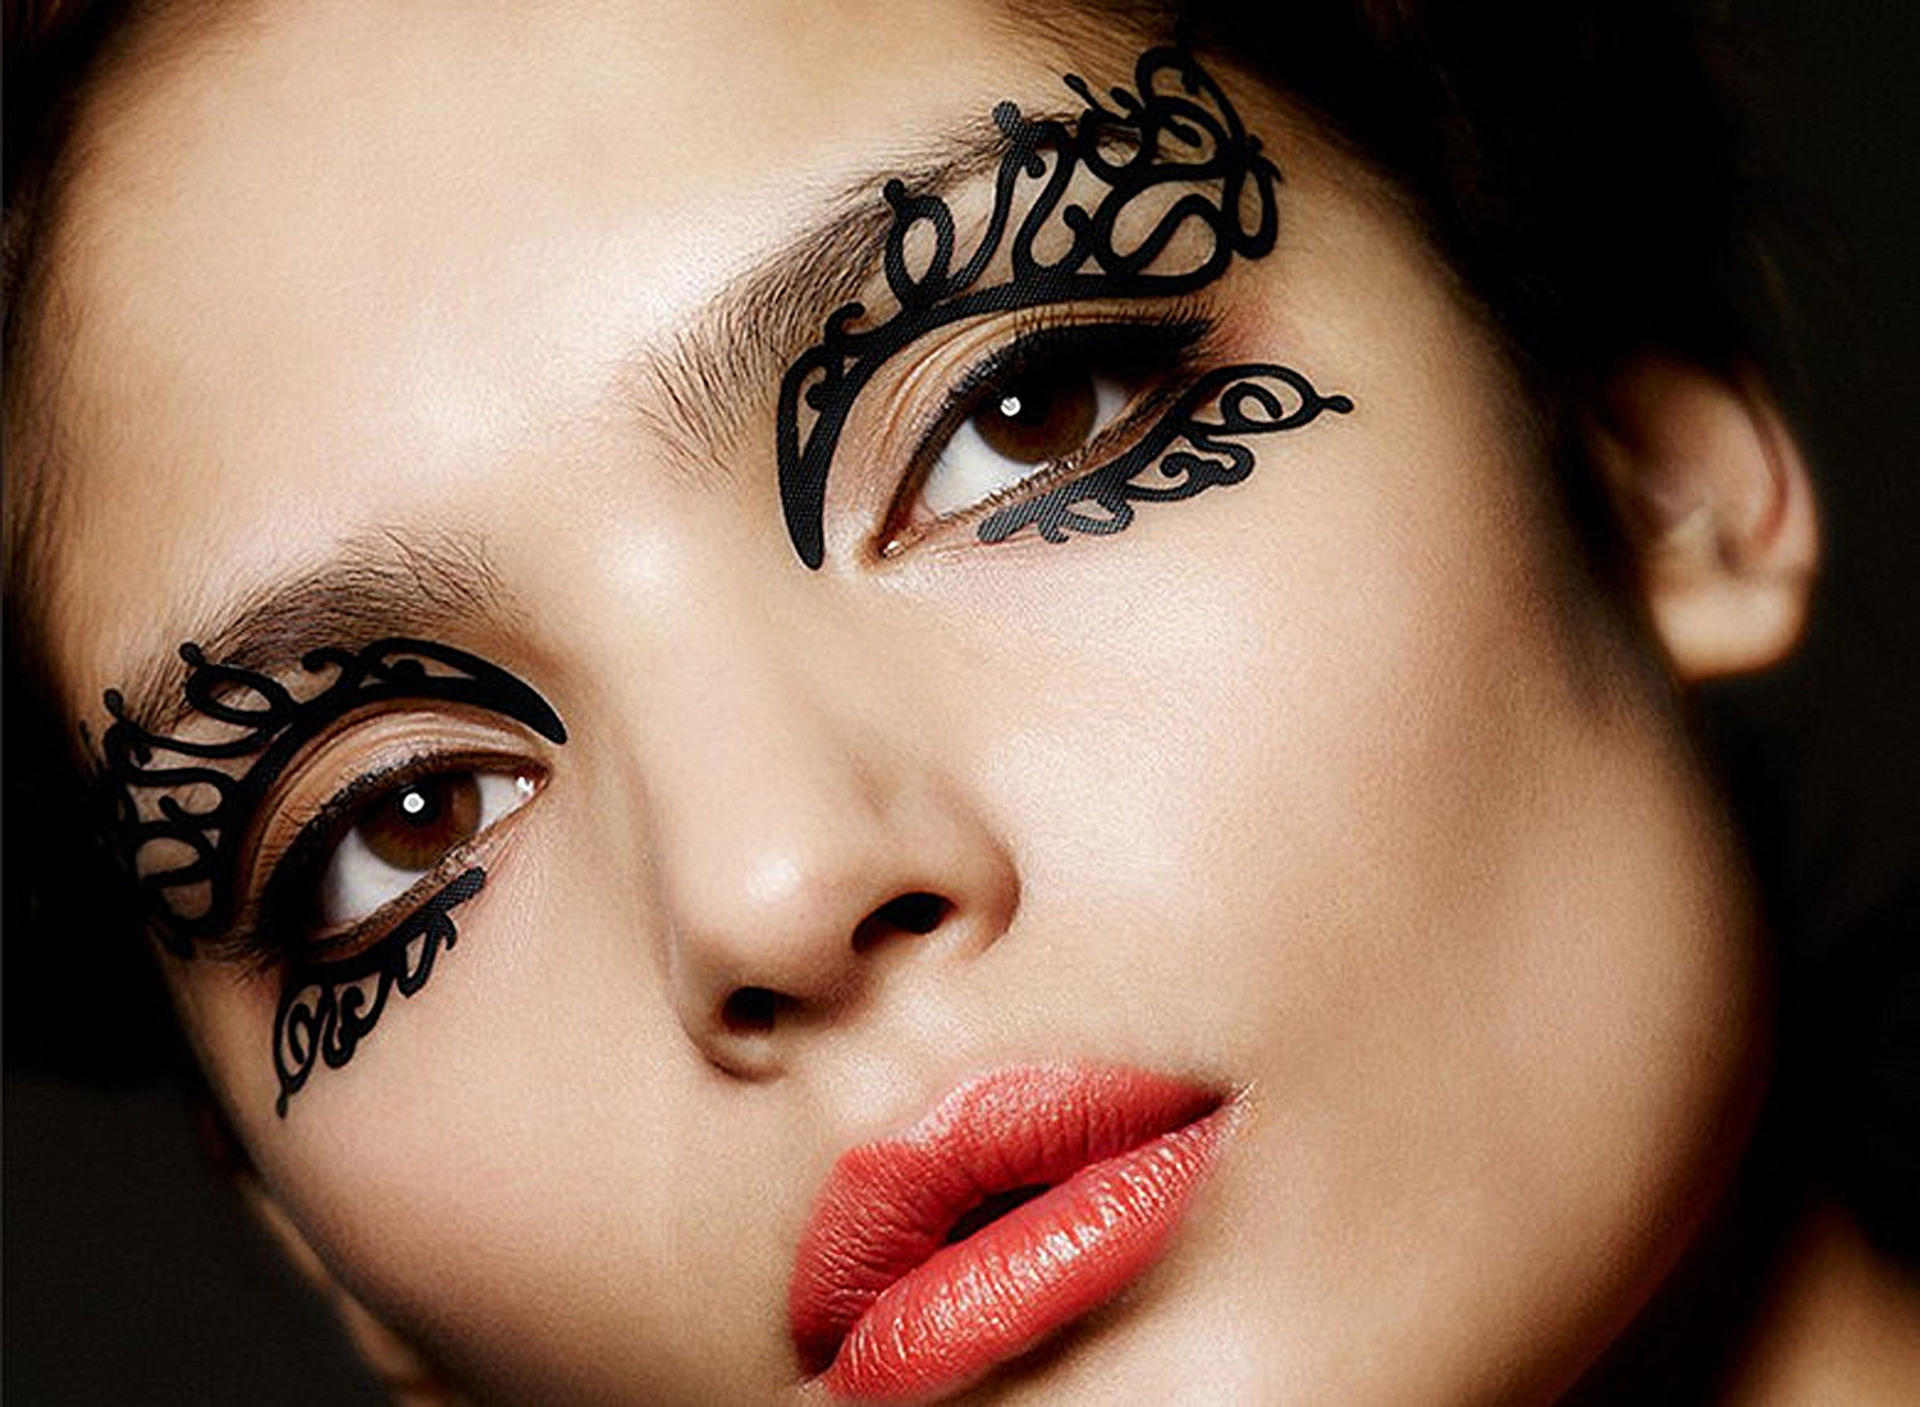 巴黎时尚创意新秀镂空艺术剪纸眼贴 艺术舞台妆用眼部彩绘贴纸